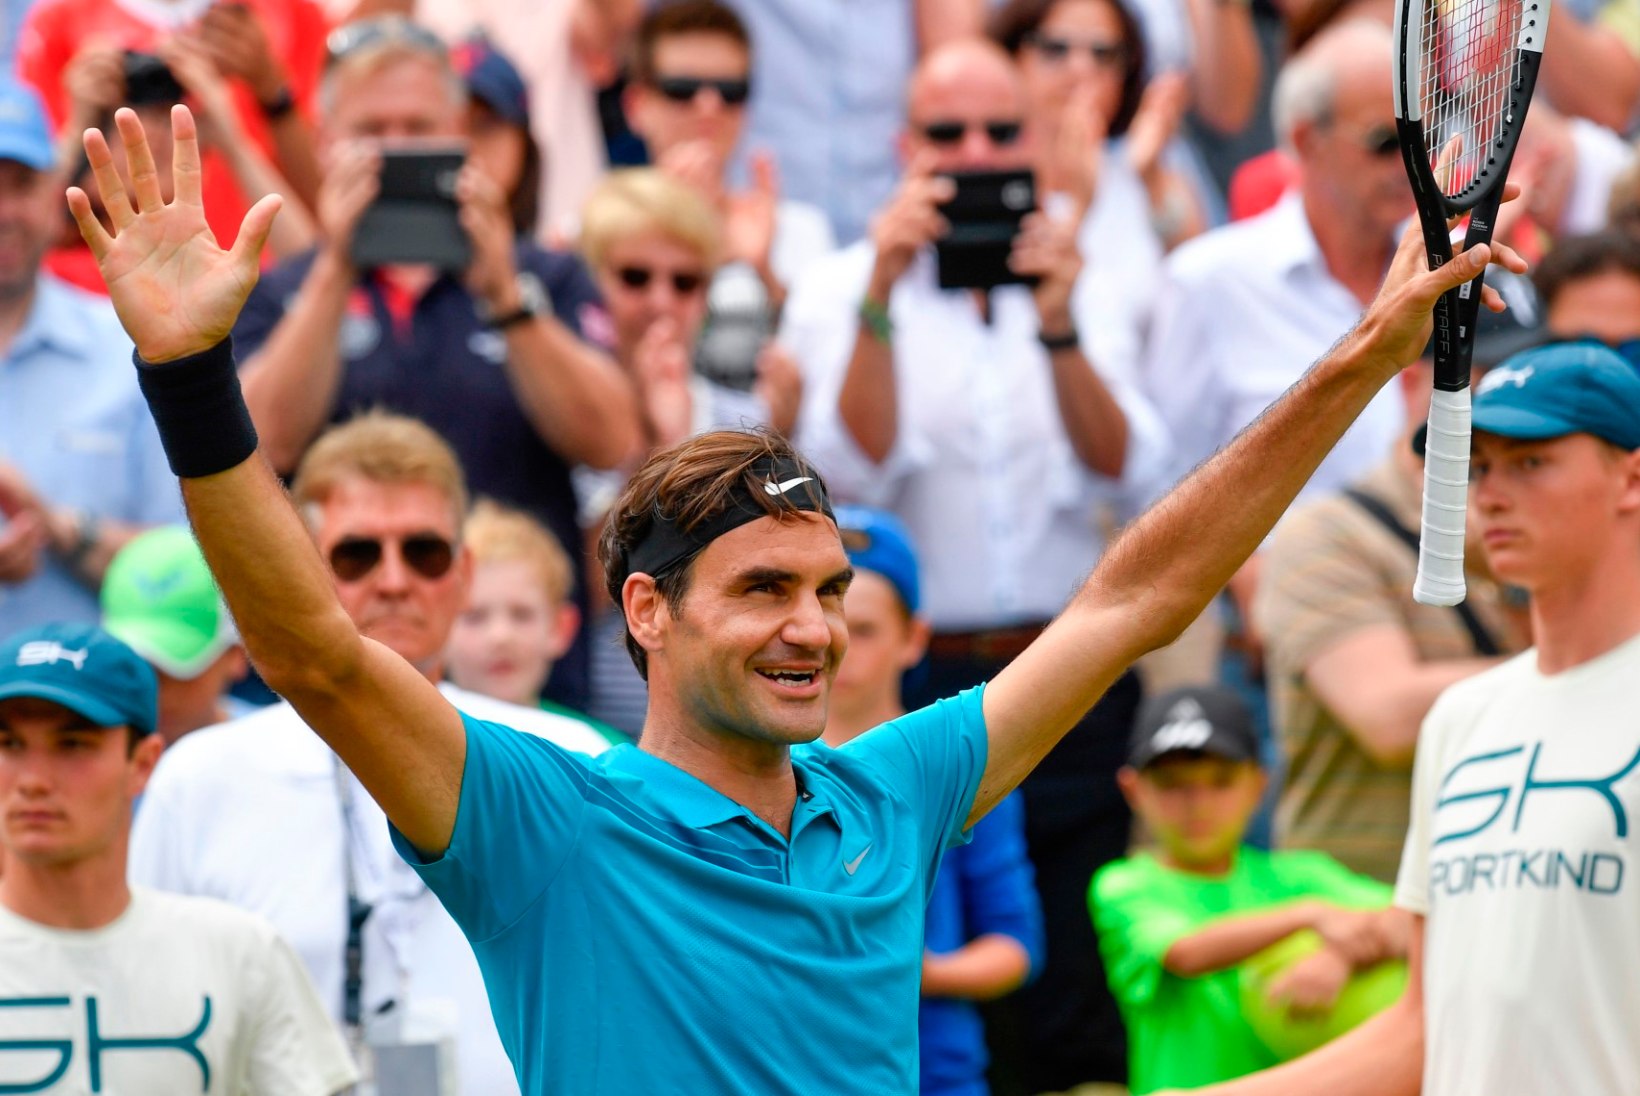 Areenile naasnud vanameister Federer võitis Saksamaa turniiri ning tõuseb taas esinumbriks